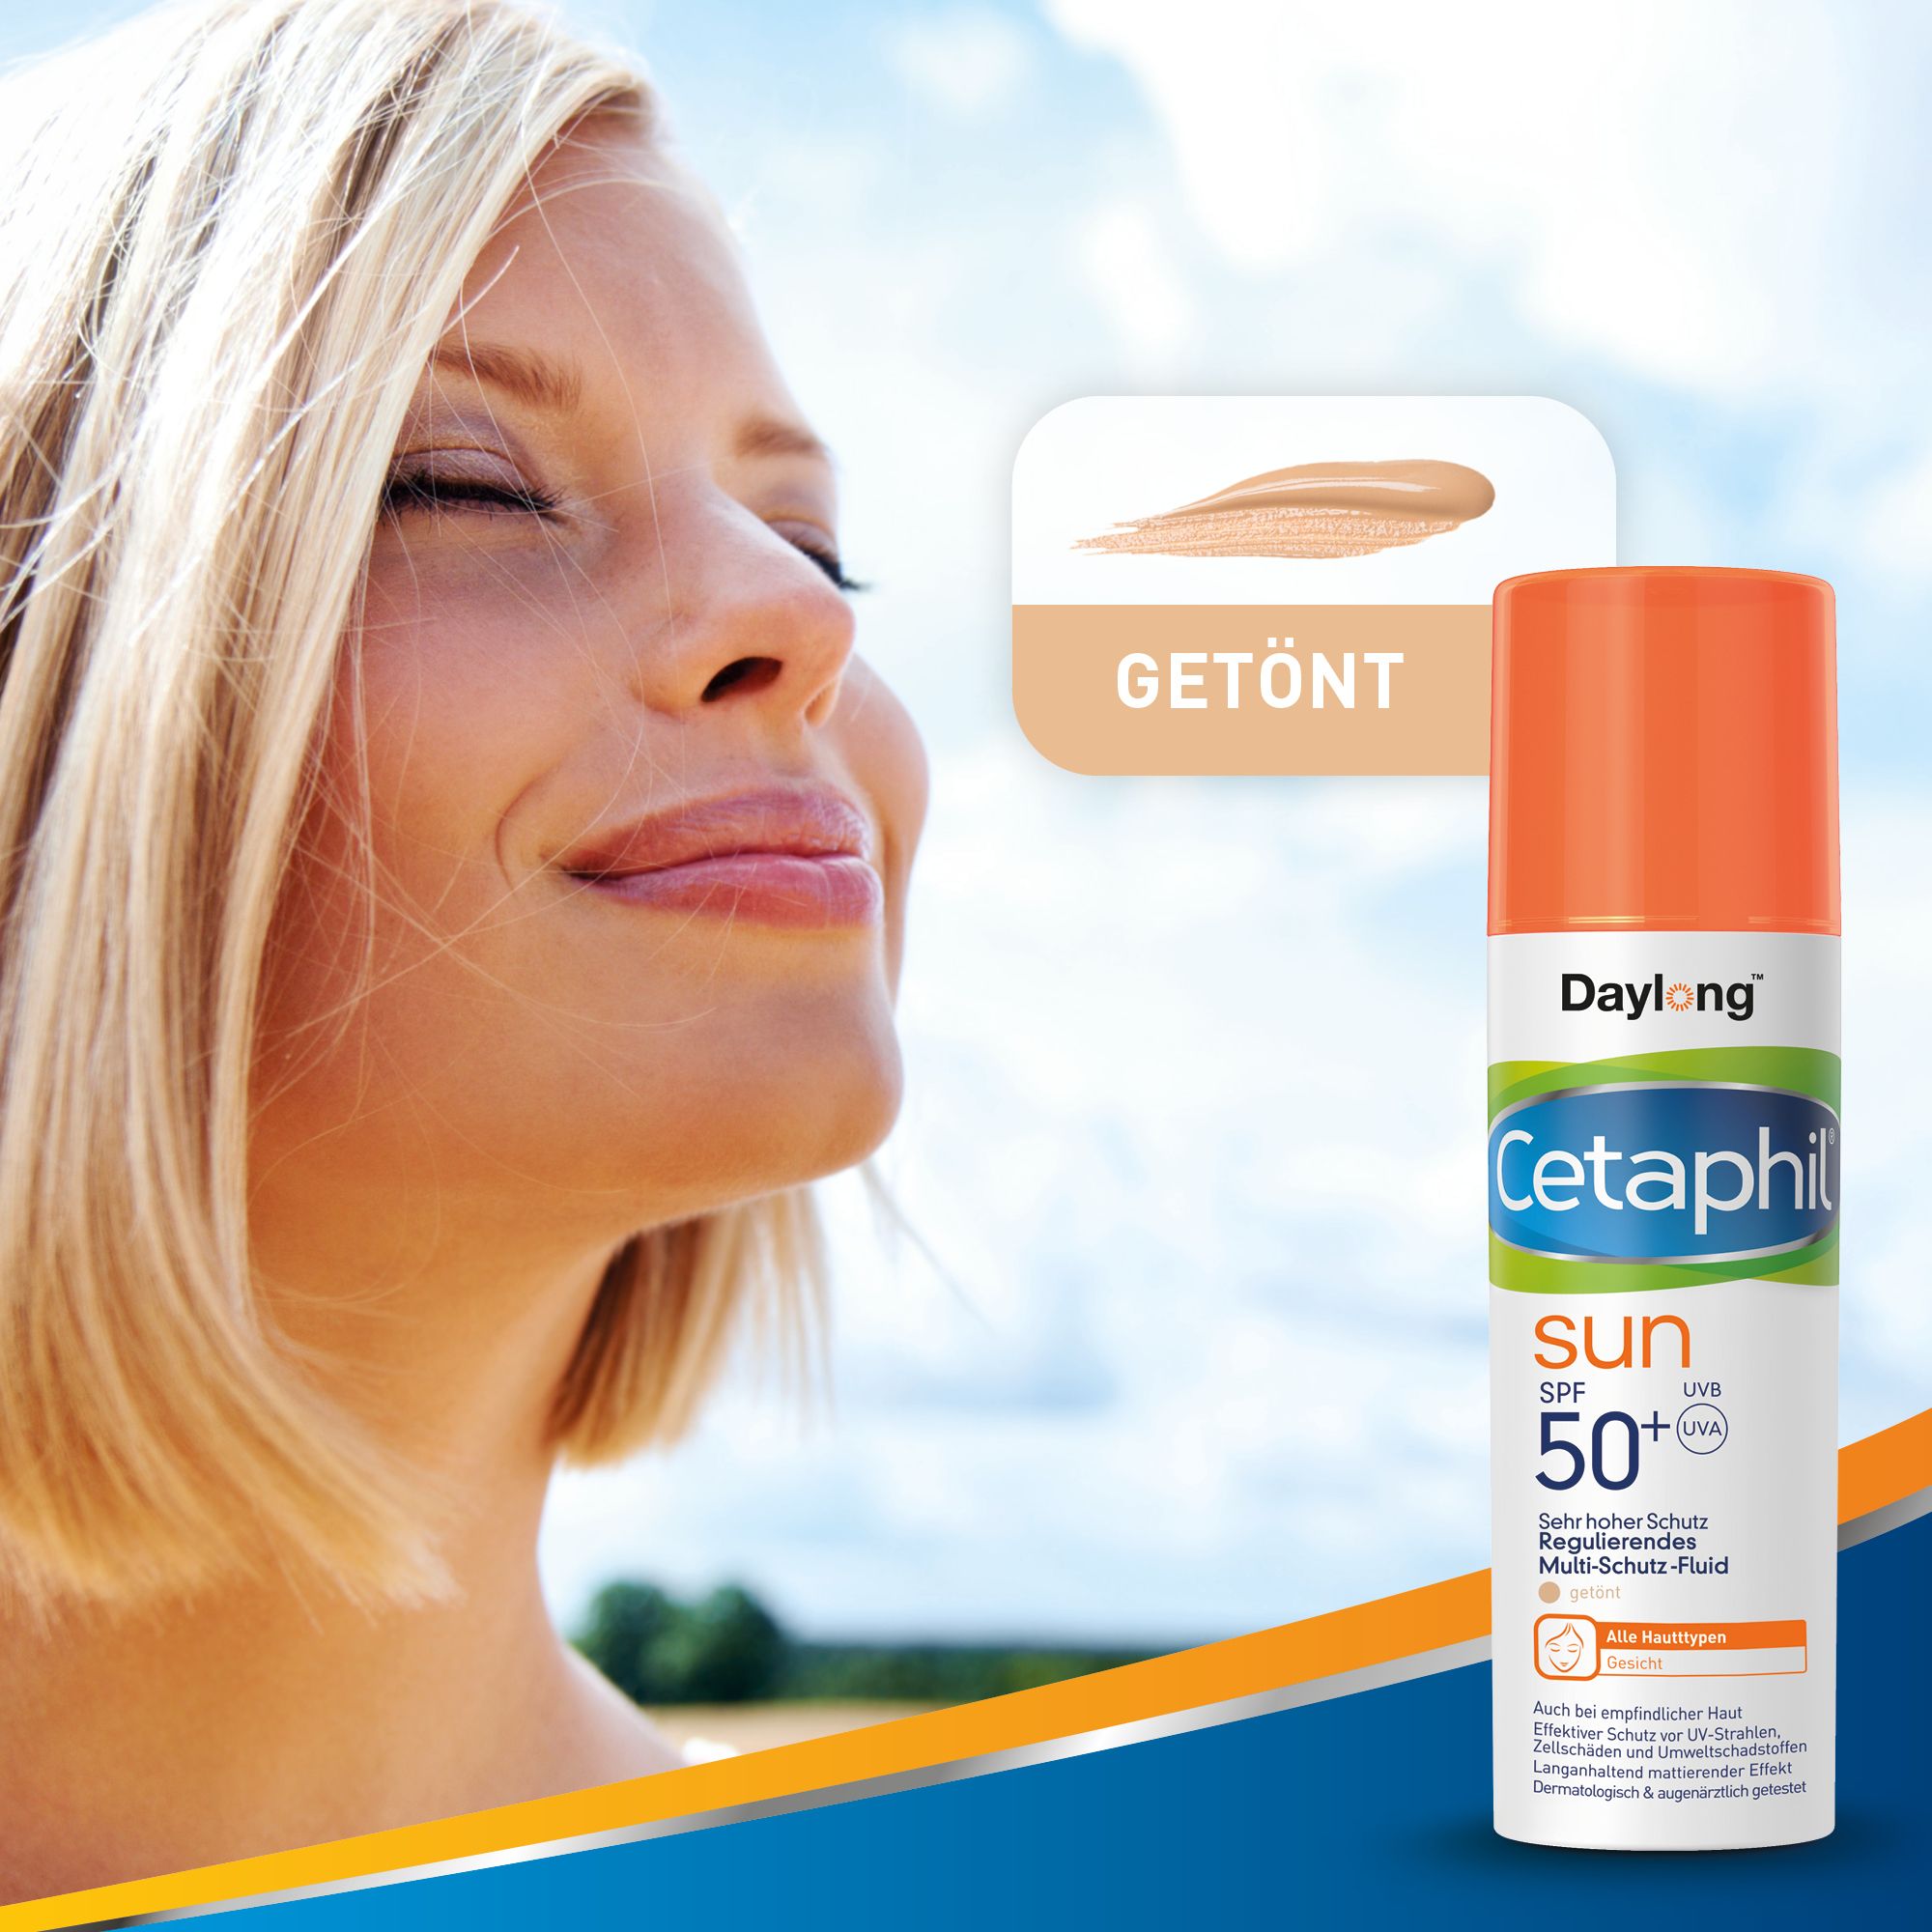 CETAPHIL SUN Regulierendes Multi-Schutz-Fluid SPF 50+ Getönter Anti-Aging-Schutz